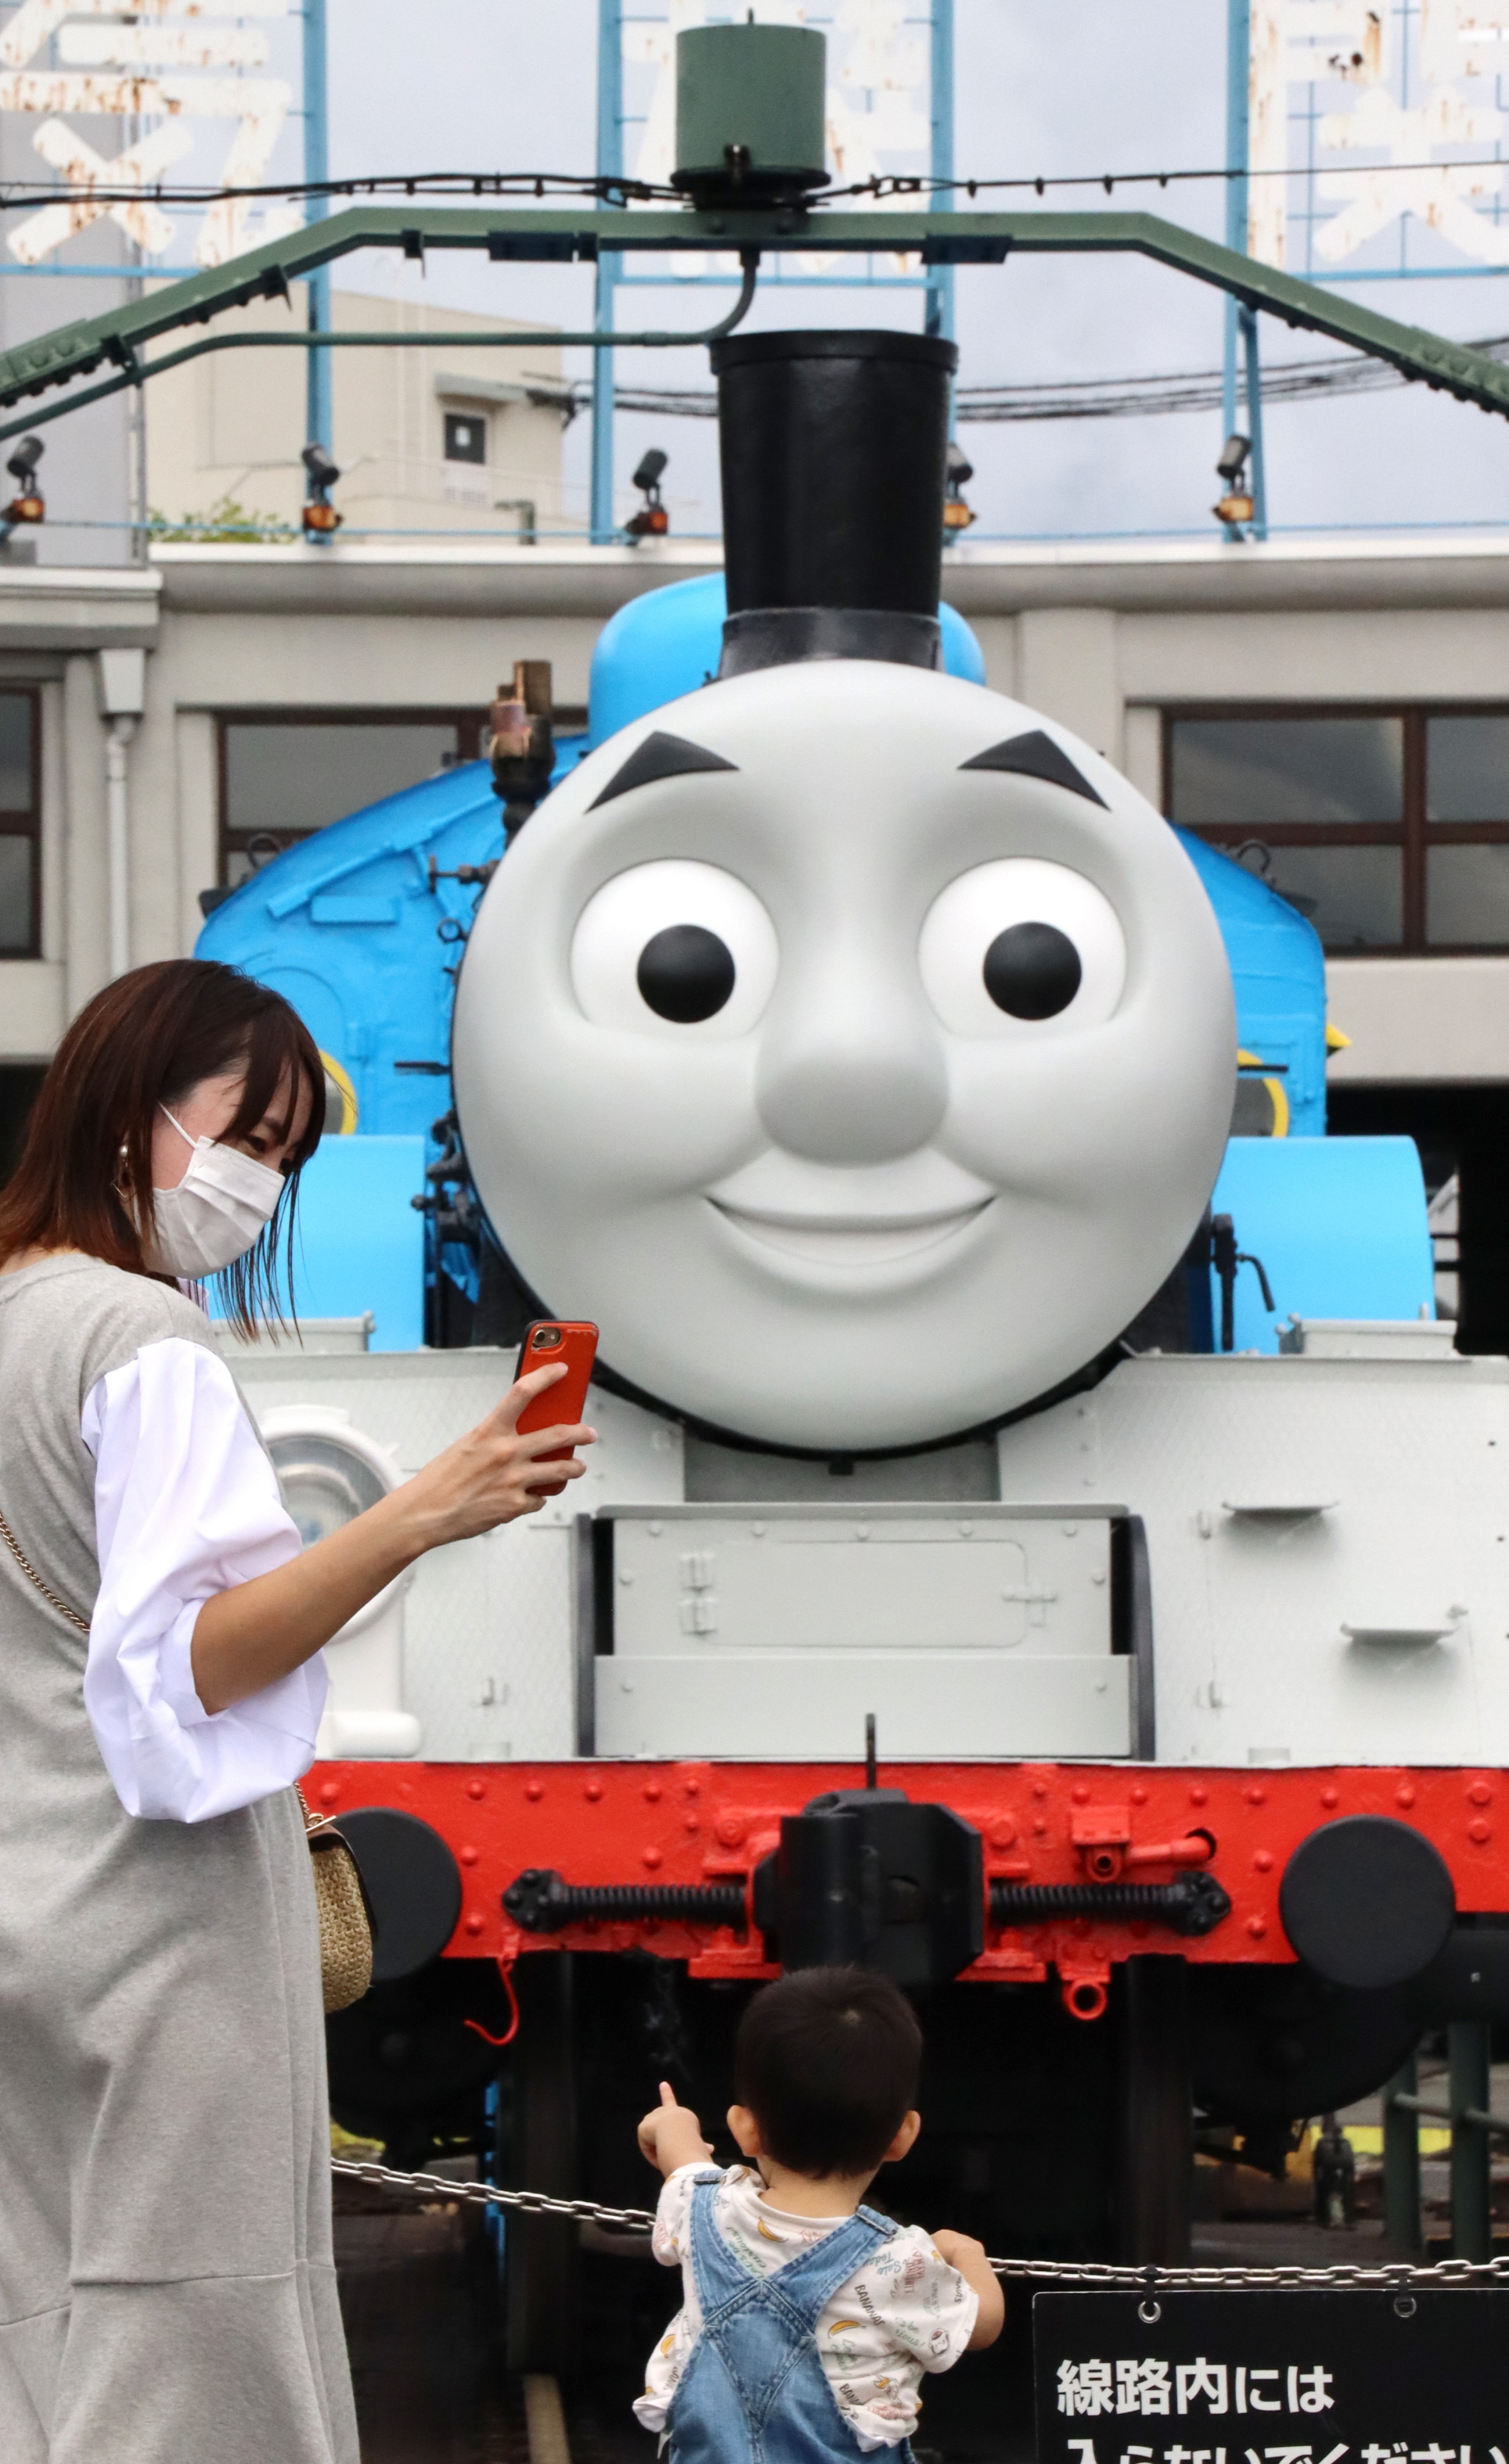 トーマス号がやってきた 京都鉄道博物館で関西初展示 産経ニュース